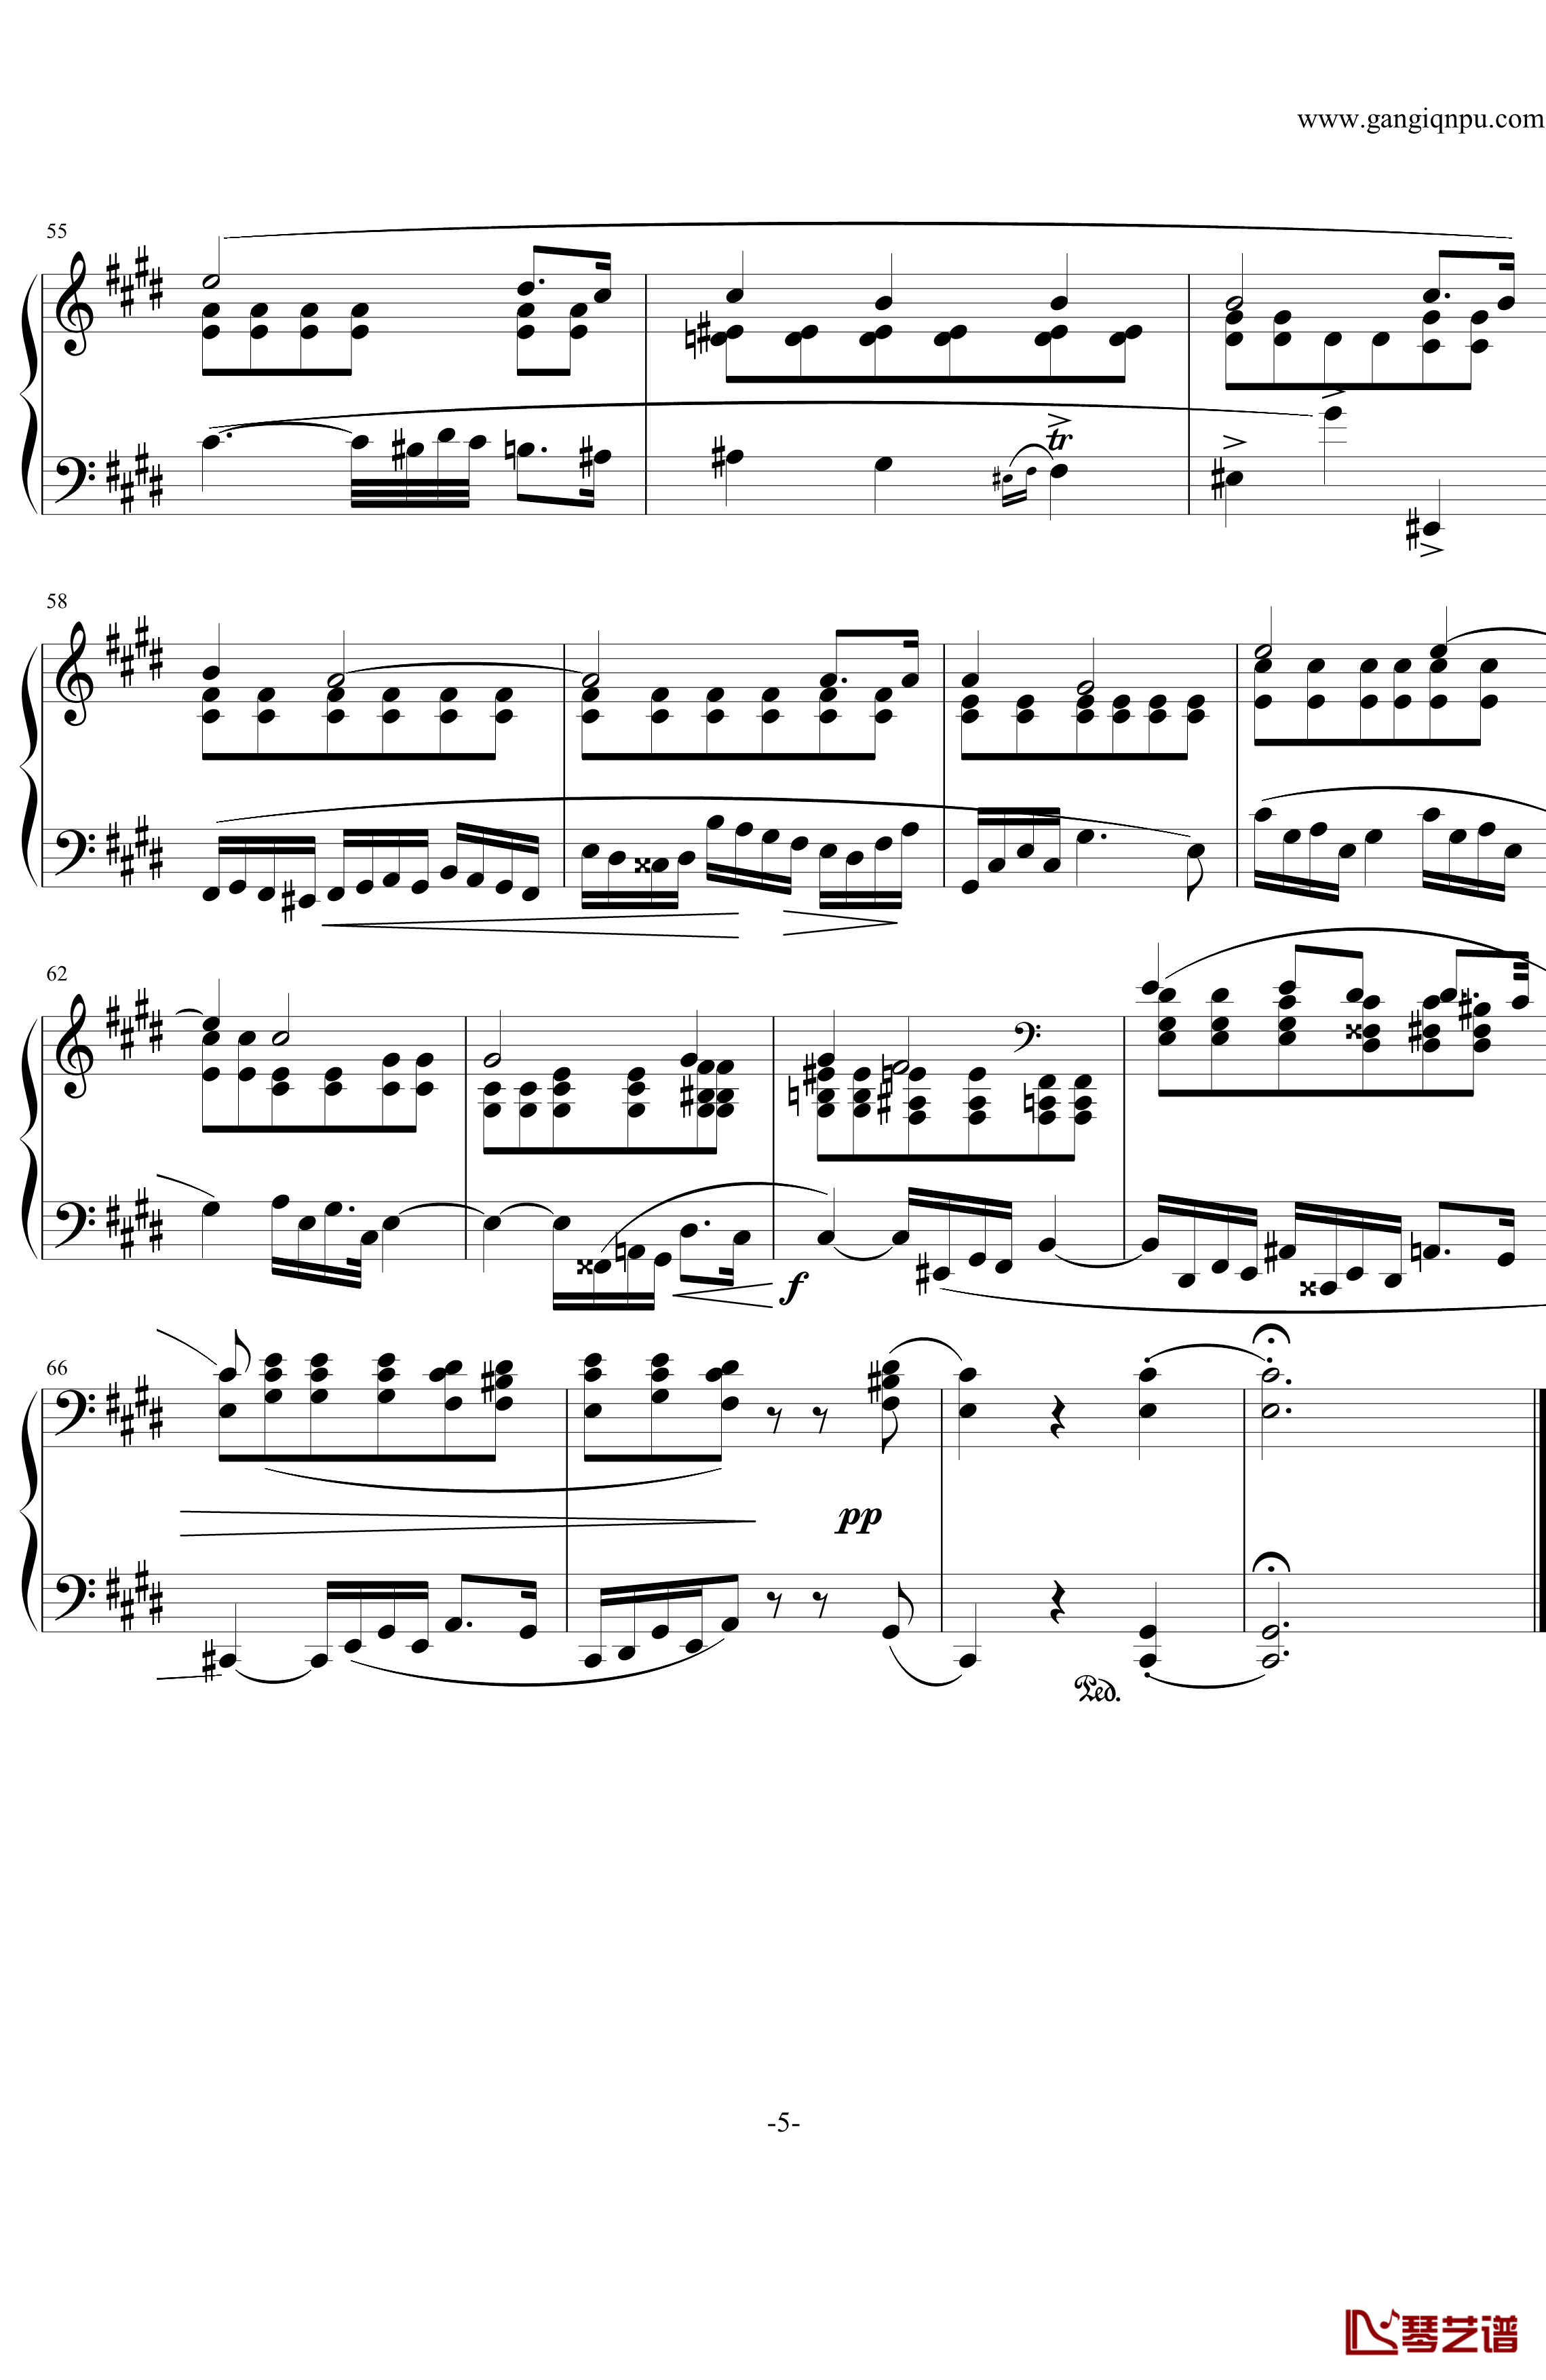 肖邦练习曲第19首钢琴谱-大提琴练习曲-肖邦-chopin5